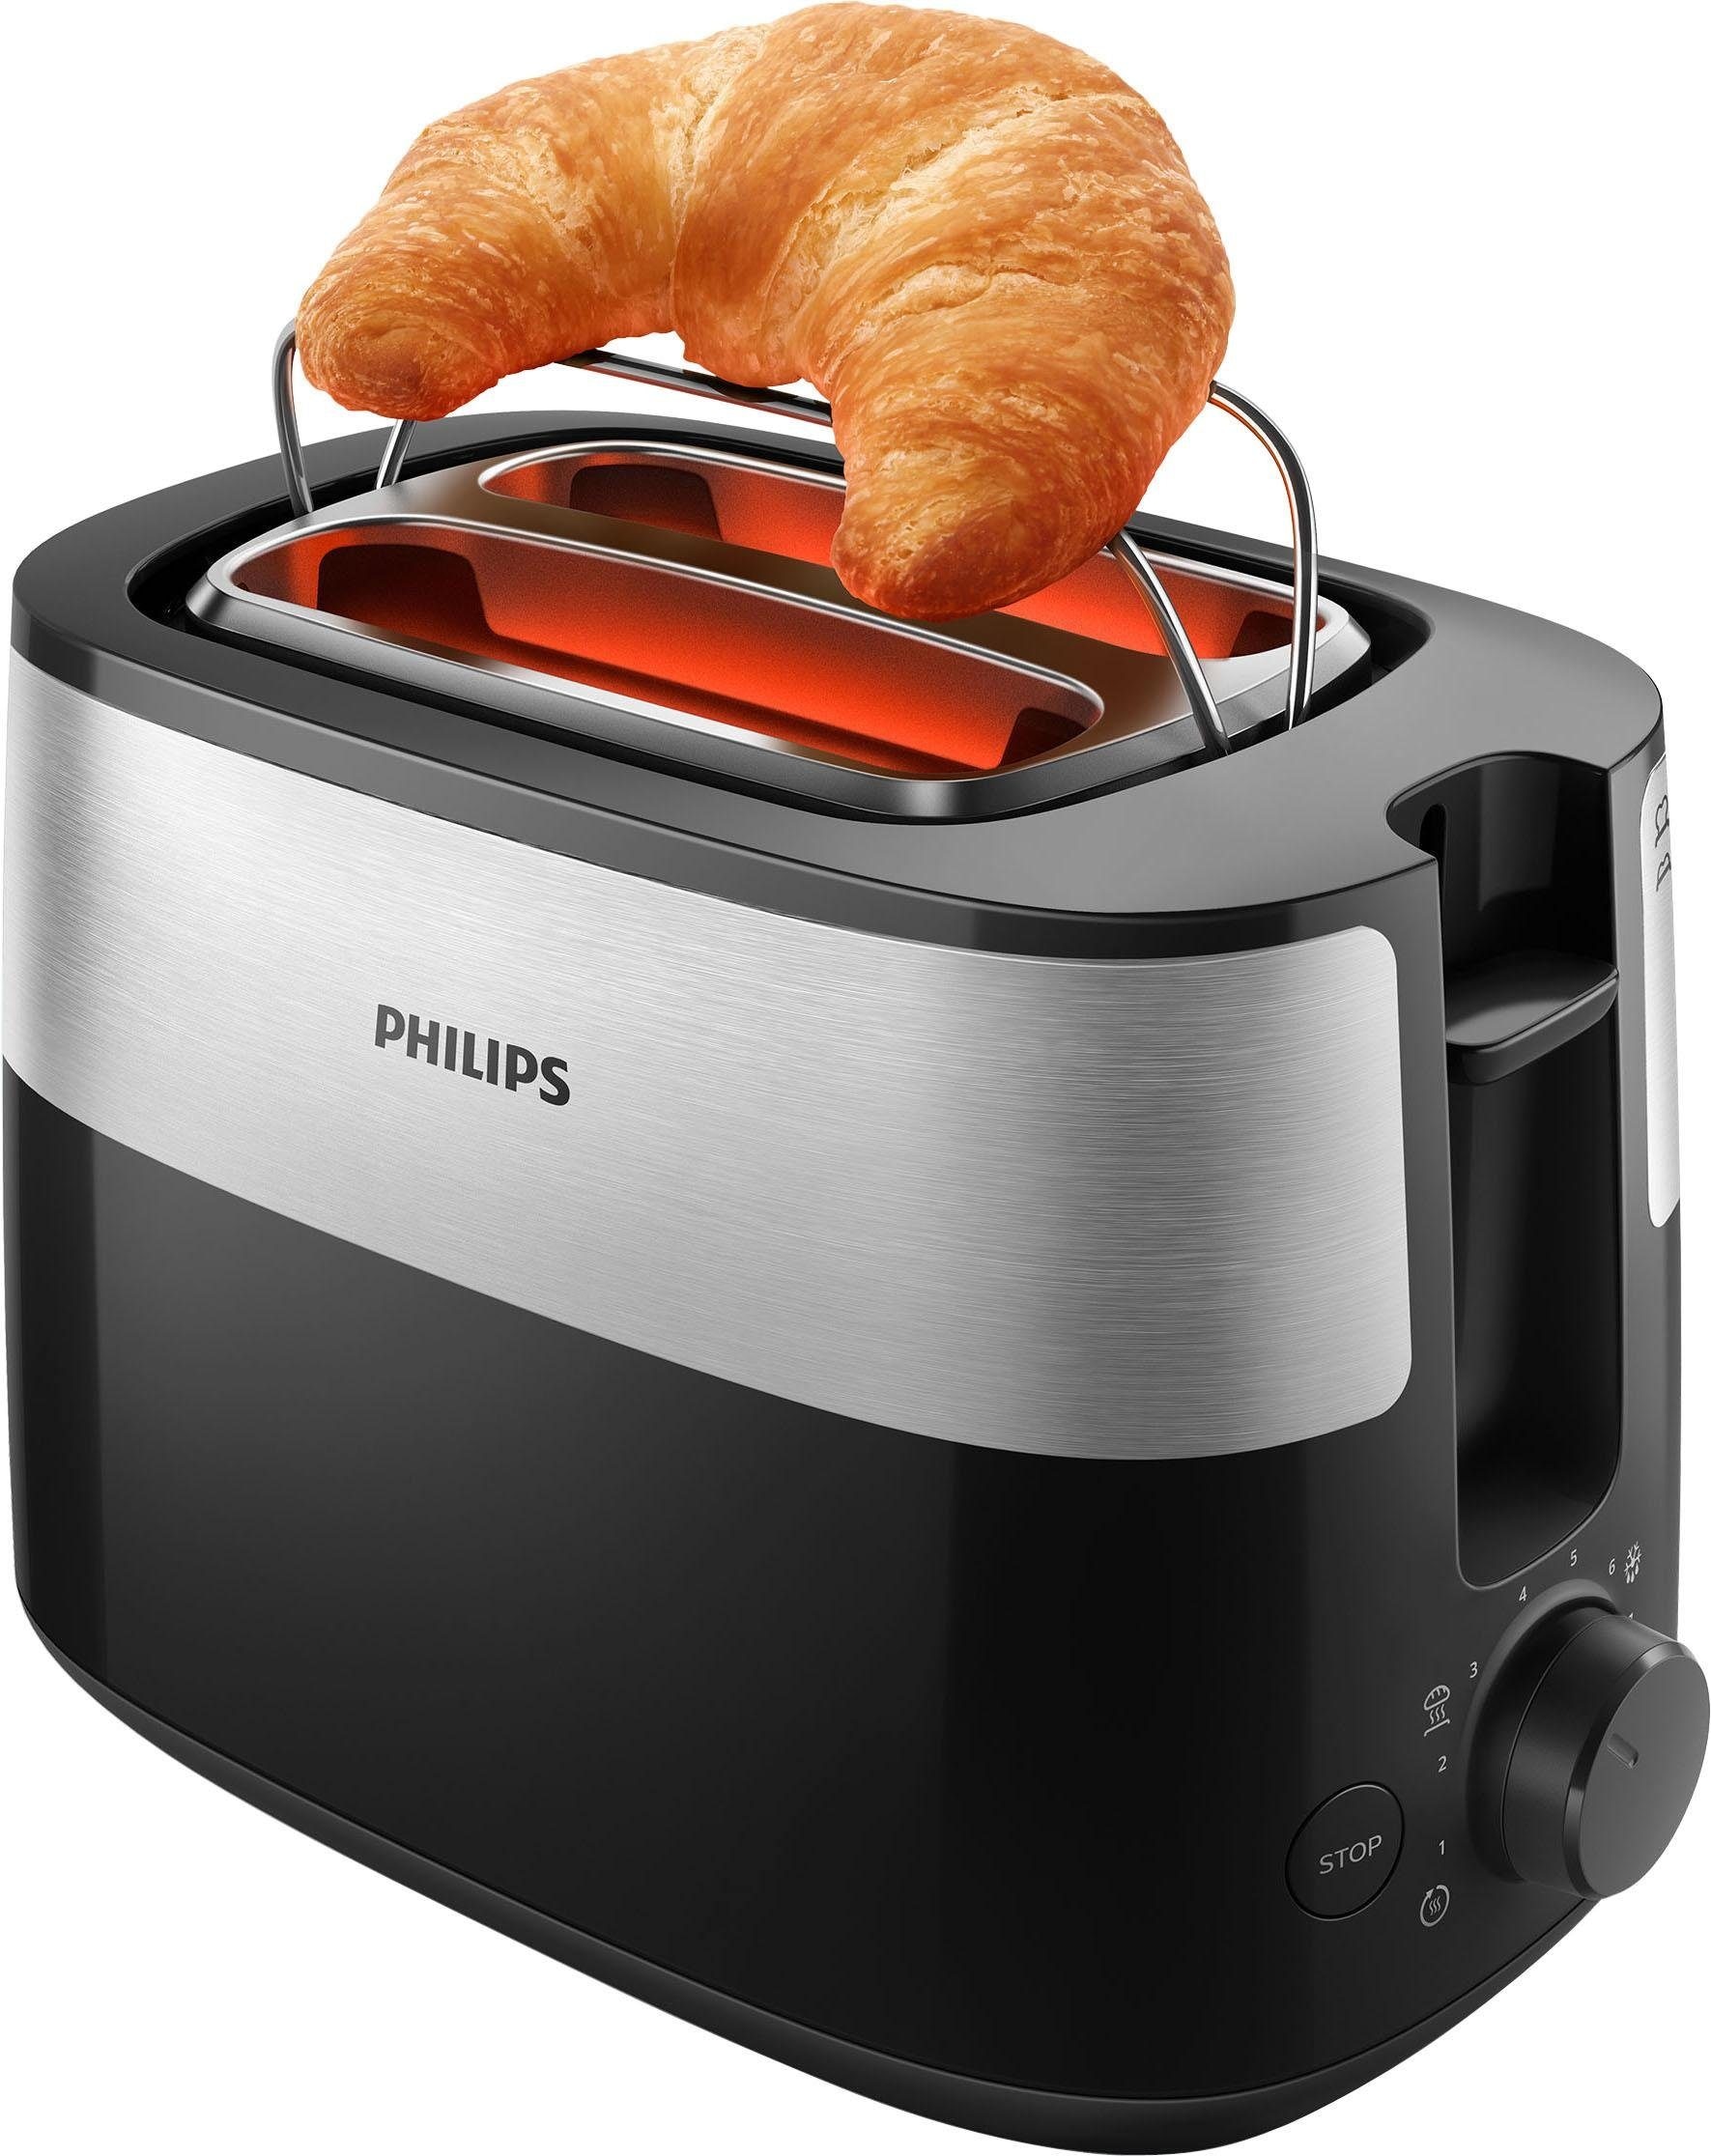 Philips Toaster »HD2516/90 Daily Collection«, 2 kurze Schlitze, 830 W, integrierter Brötchenaufsatz und 8 Bräunungsstufen, edelstahl/schwarz